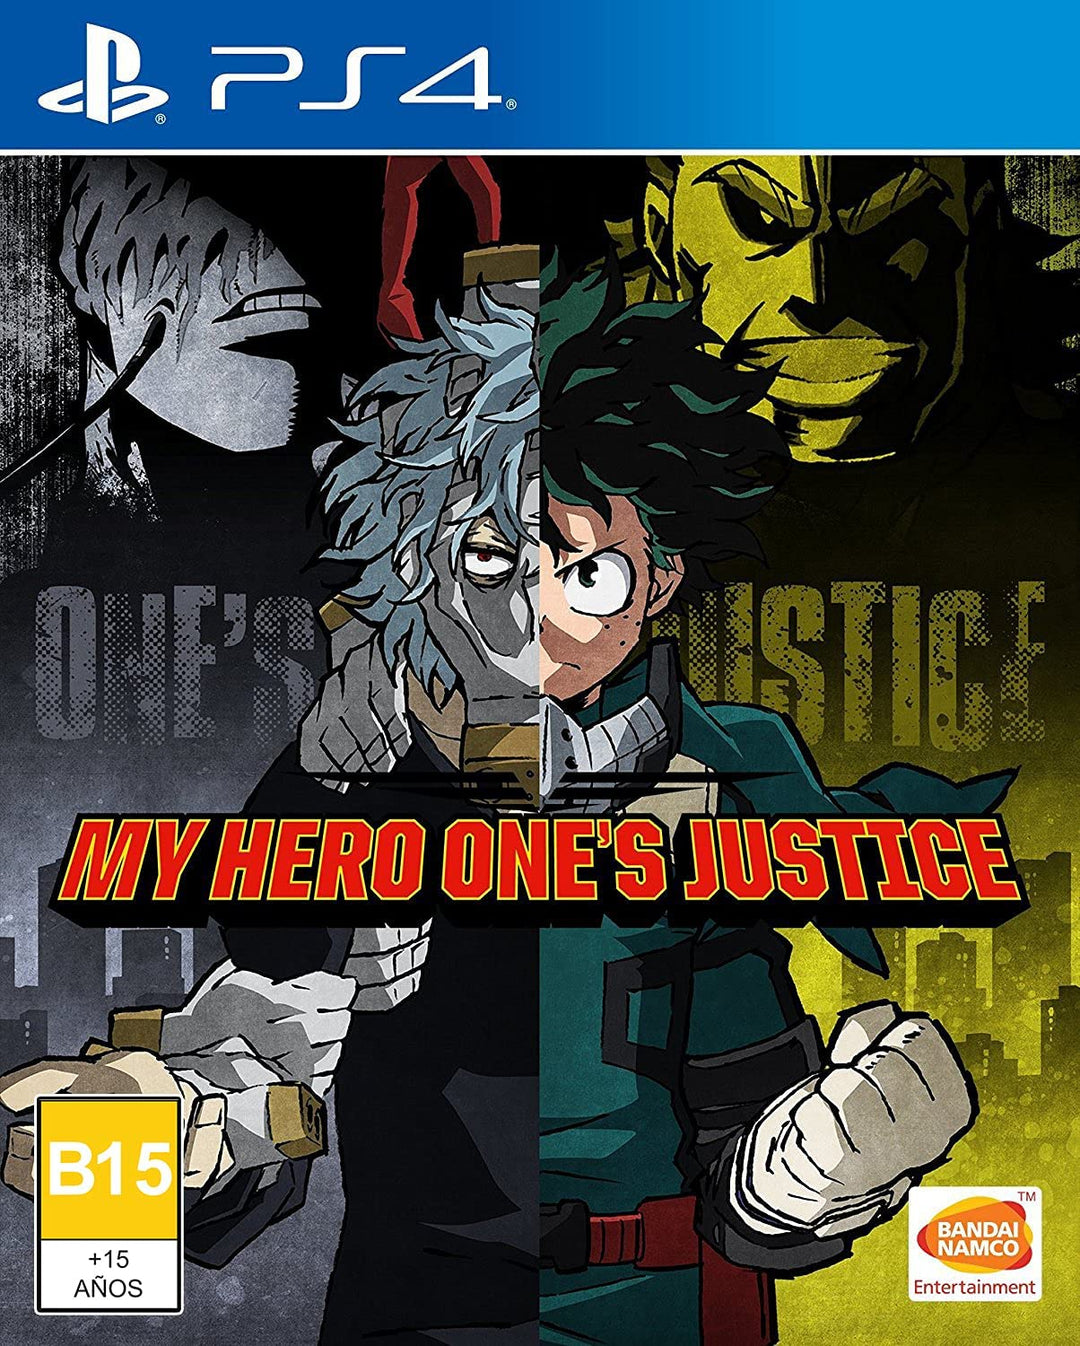 MY HERO ONE'S JUSTICE - MY HERO ONE'S JUSTICE (1 SPIELE)